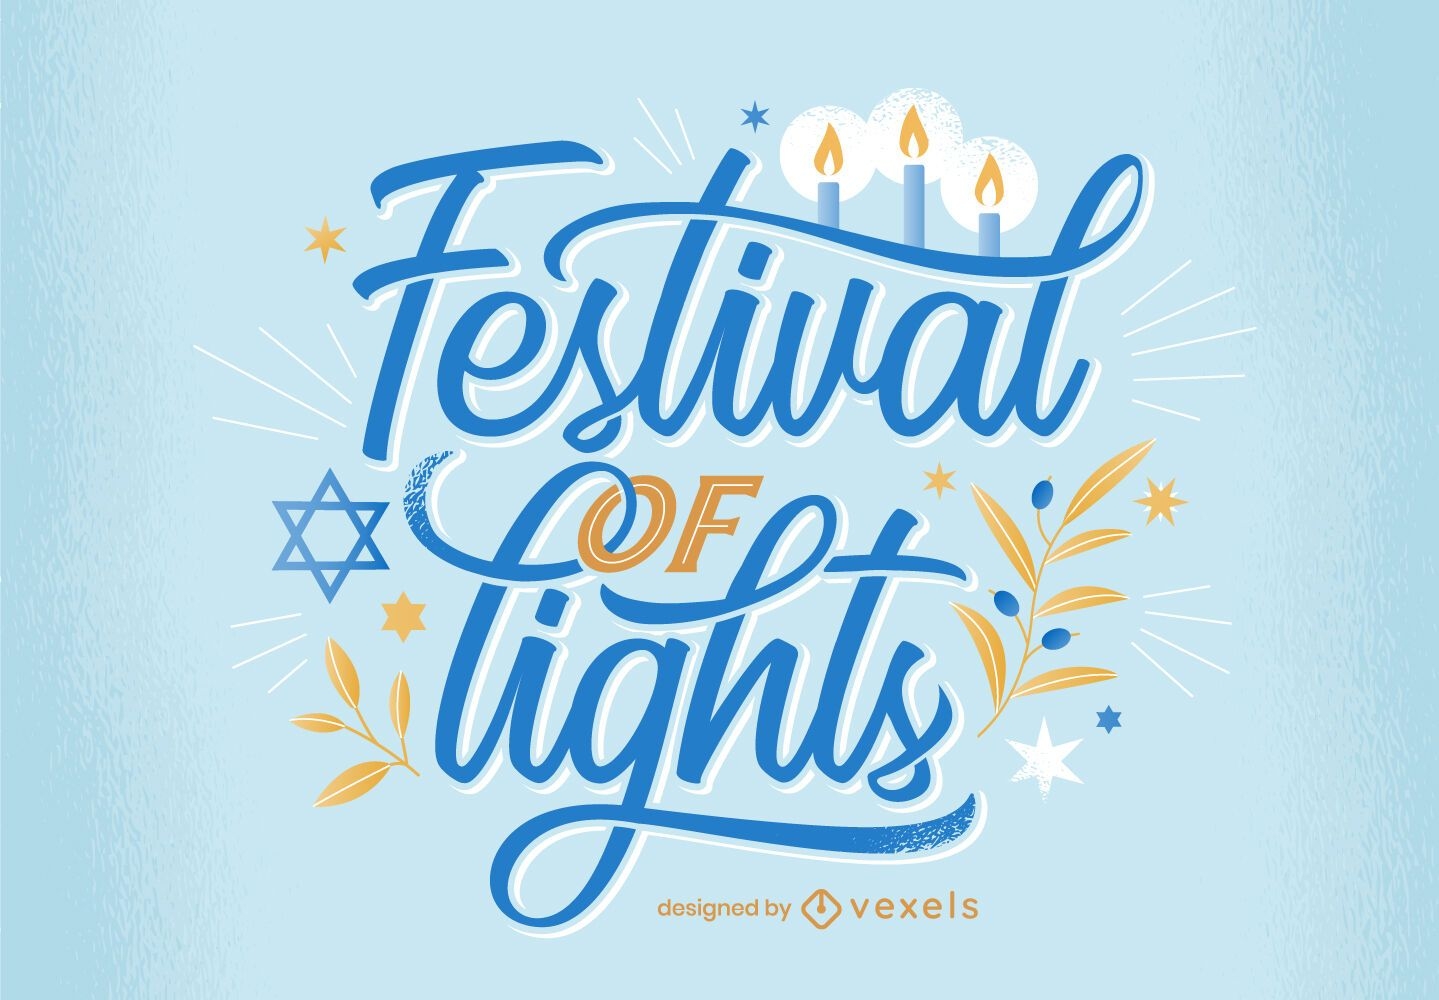 Festival de luces dise?o de letras de hanukkah